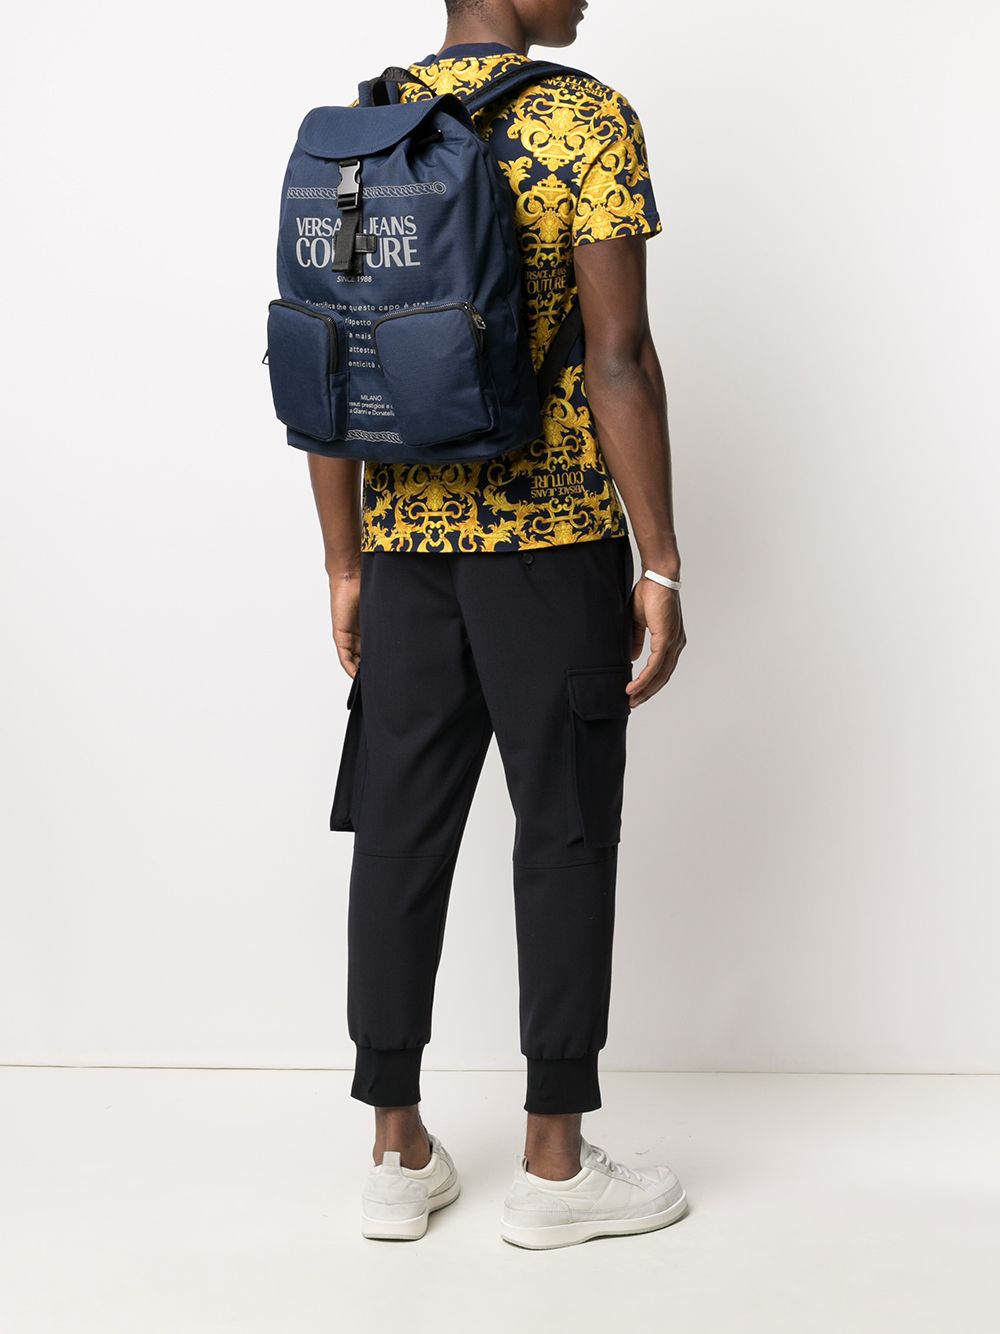 фото Versace jeans couture рюкзак с логотипом